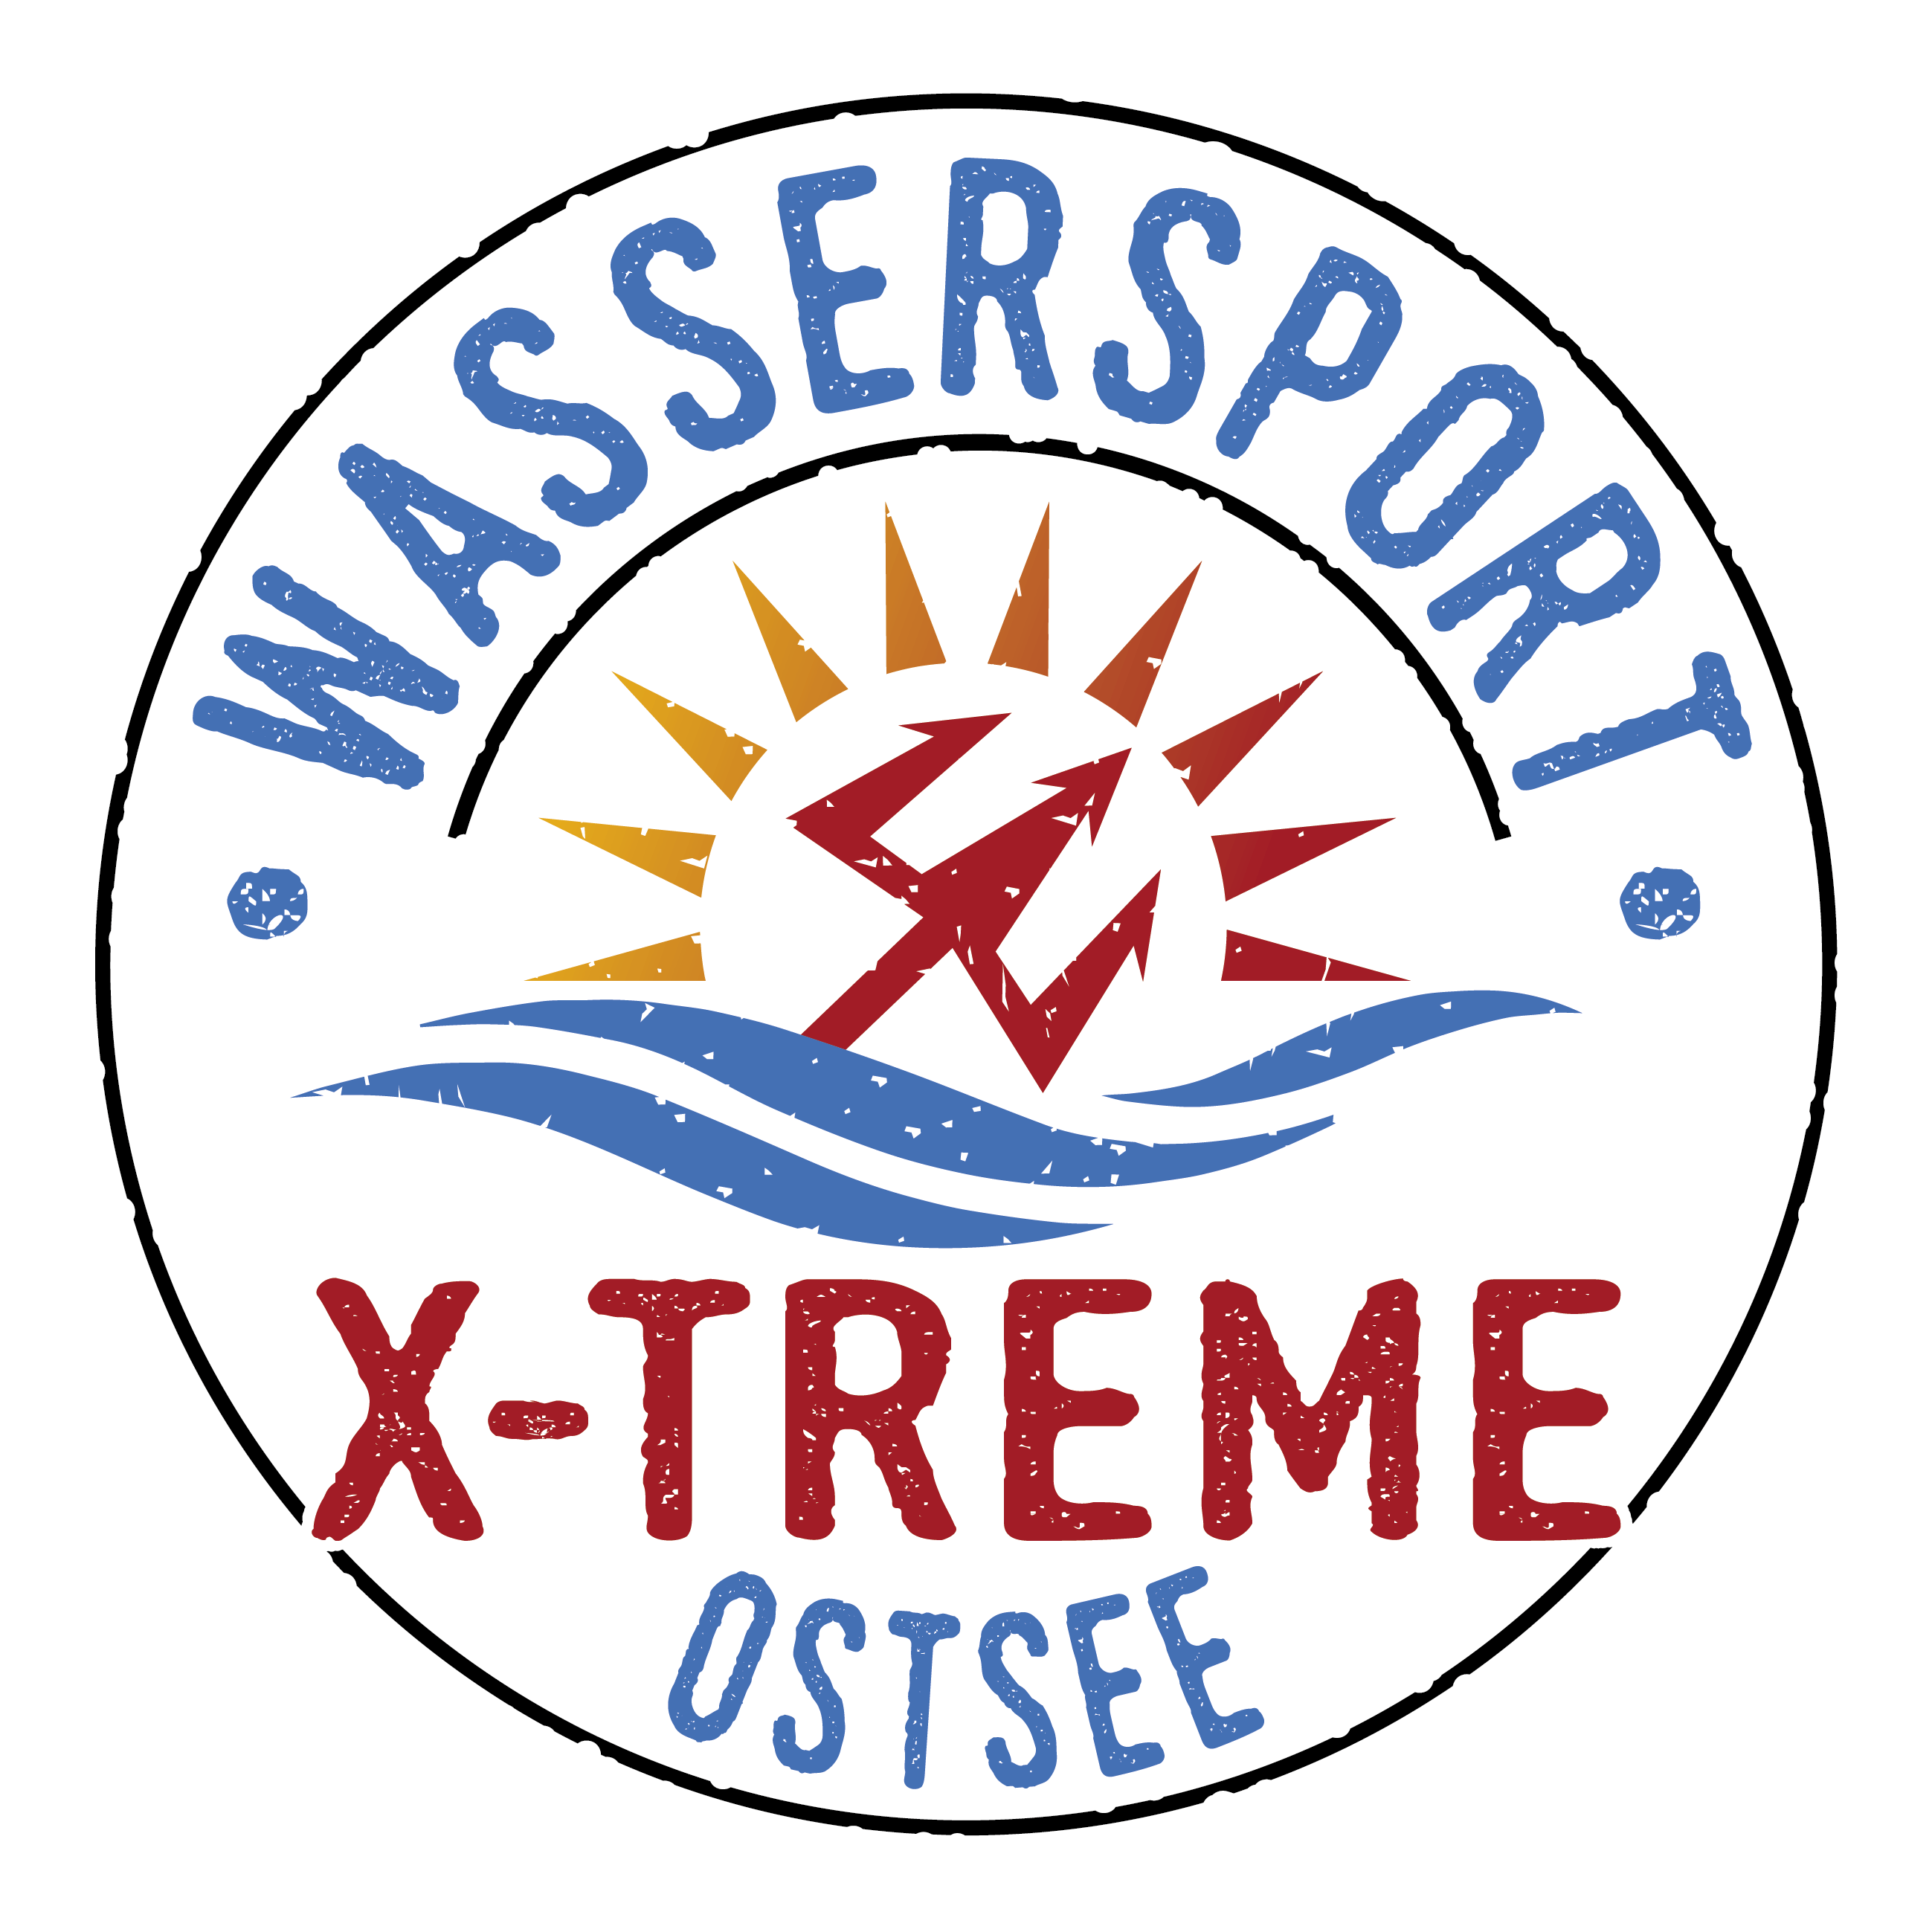 Ferien Action in Damp bei Wassersport X-treme in der Eckernförder Bucht an der Ostsee